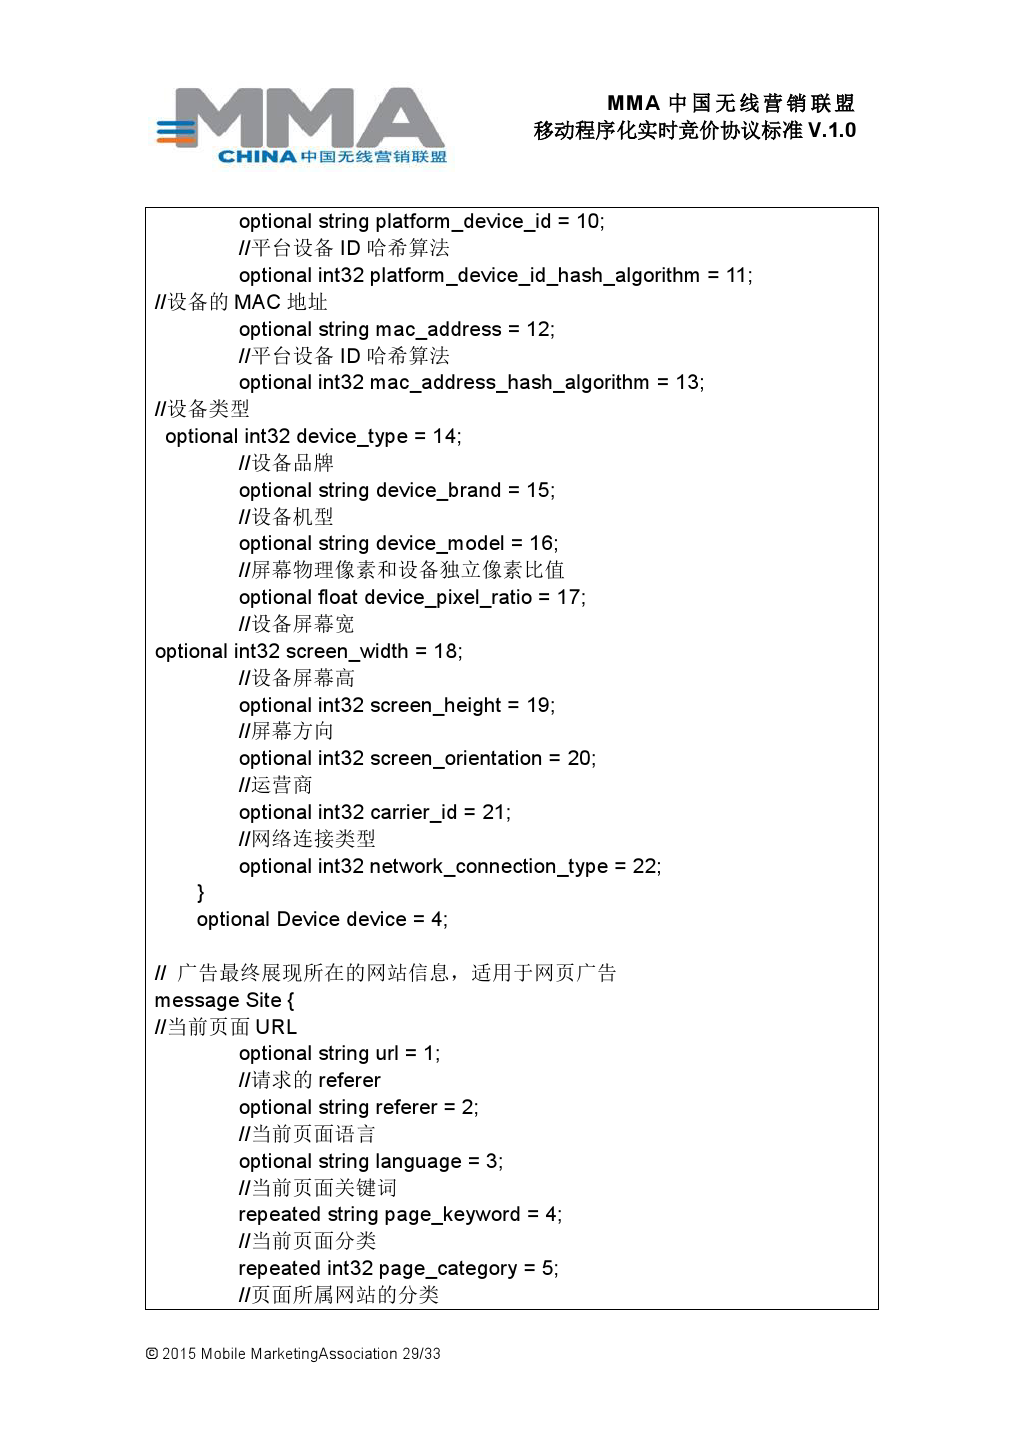 MMA中国无线营销联盟移动程序化实时竞价协议标准V.1.0_000030